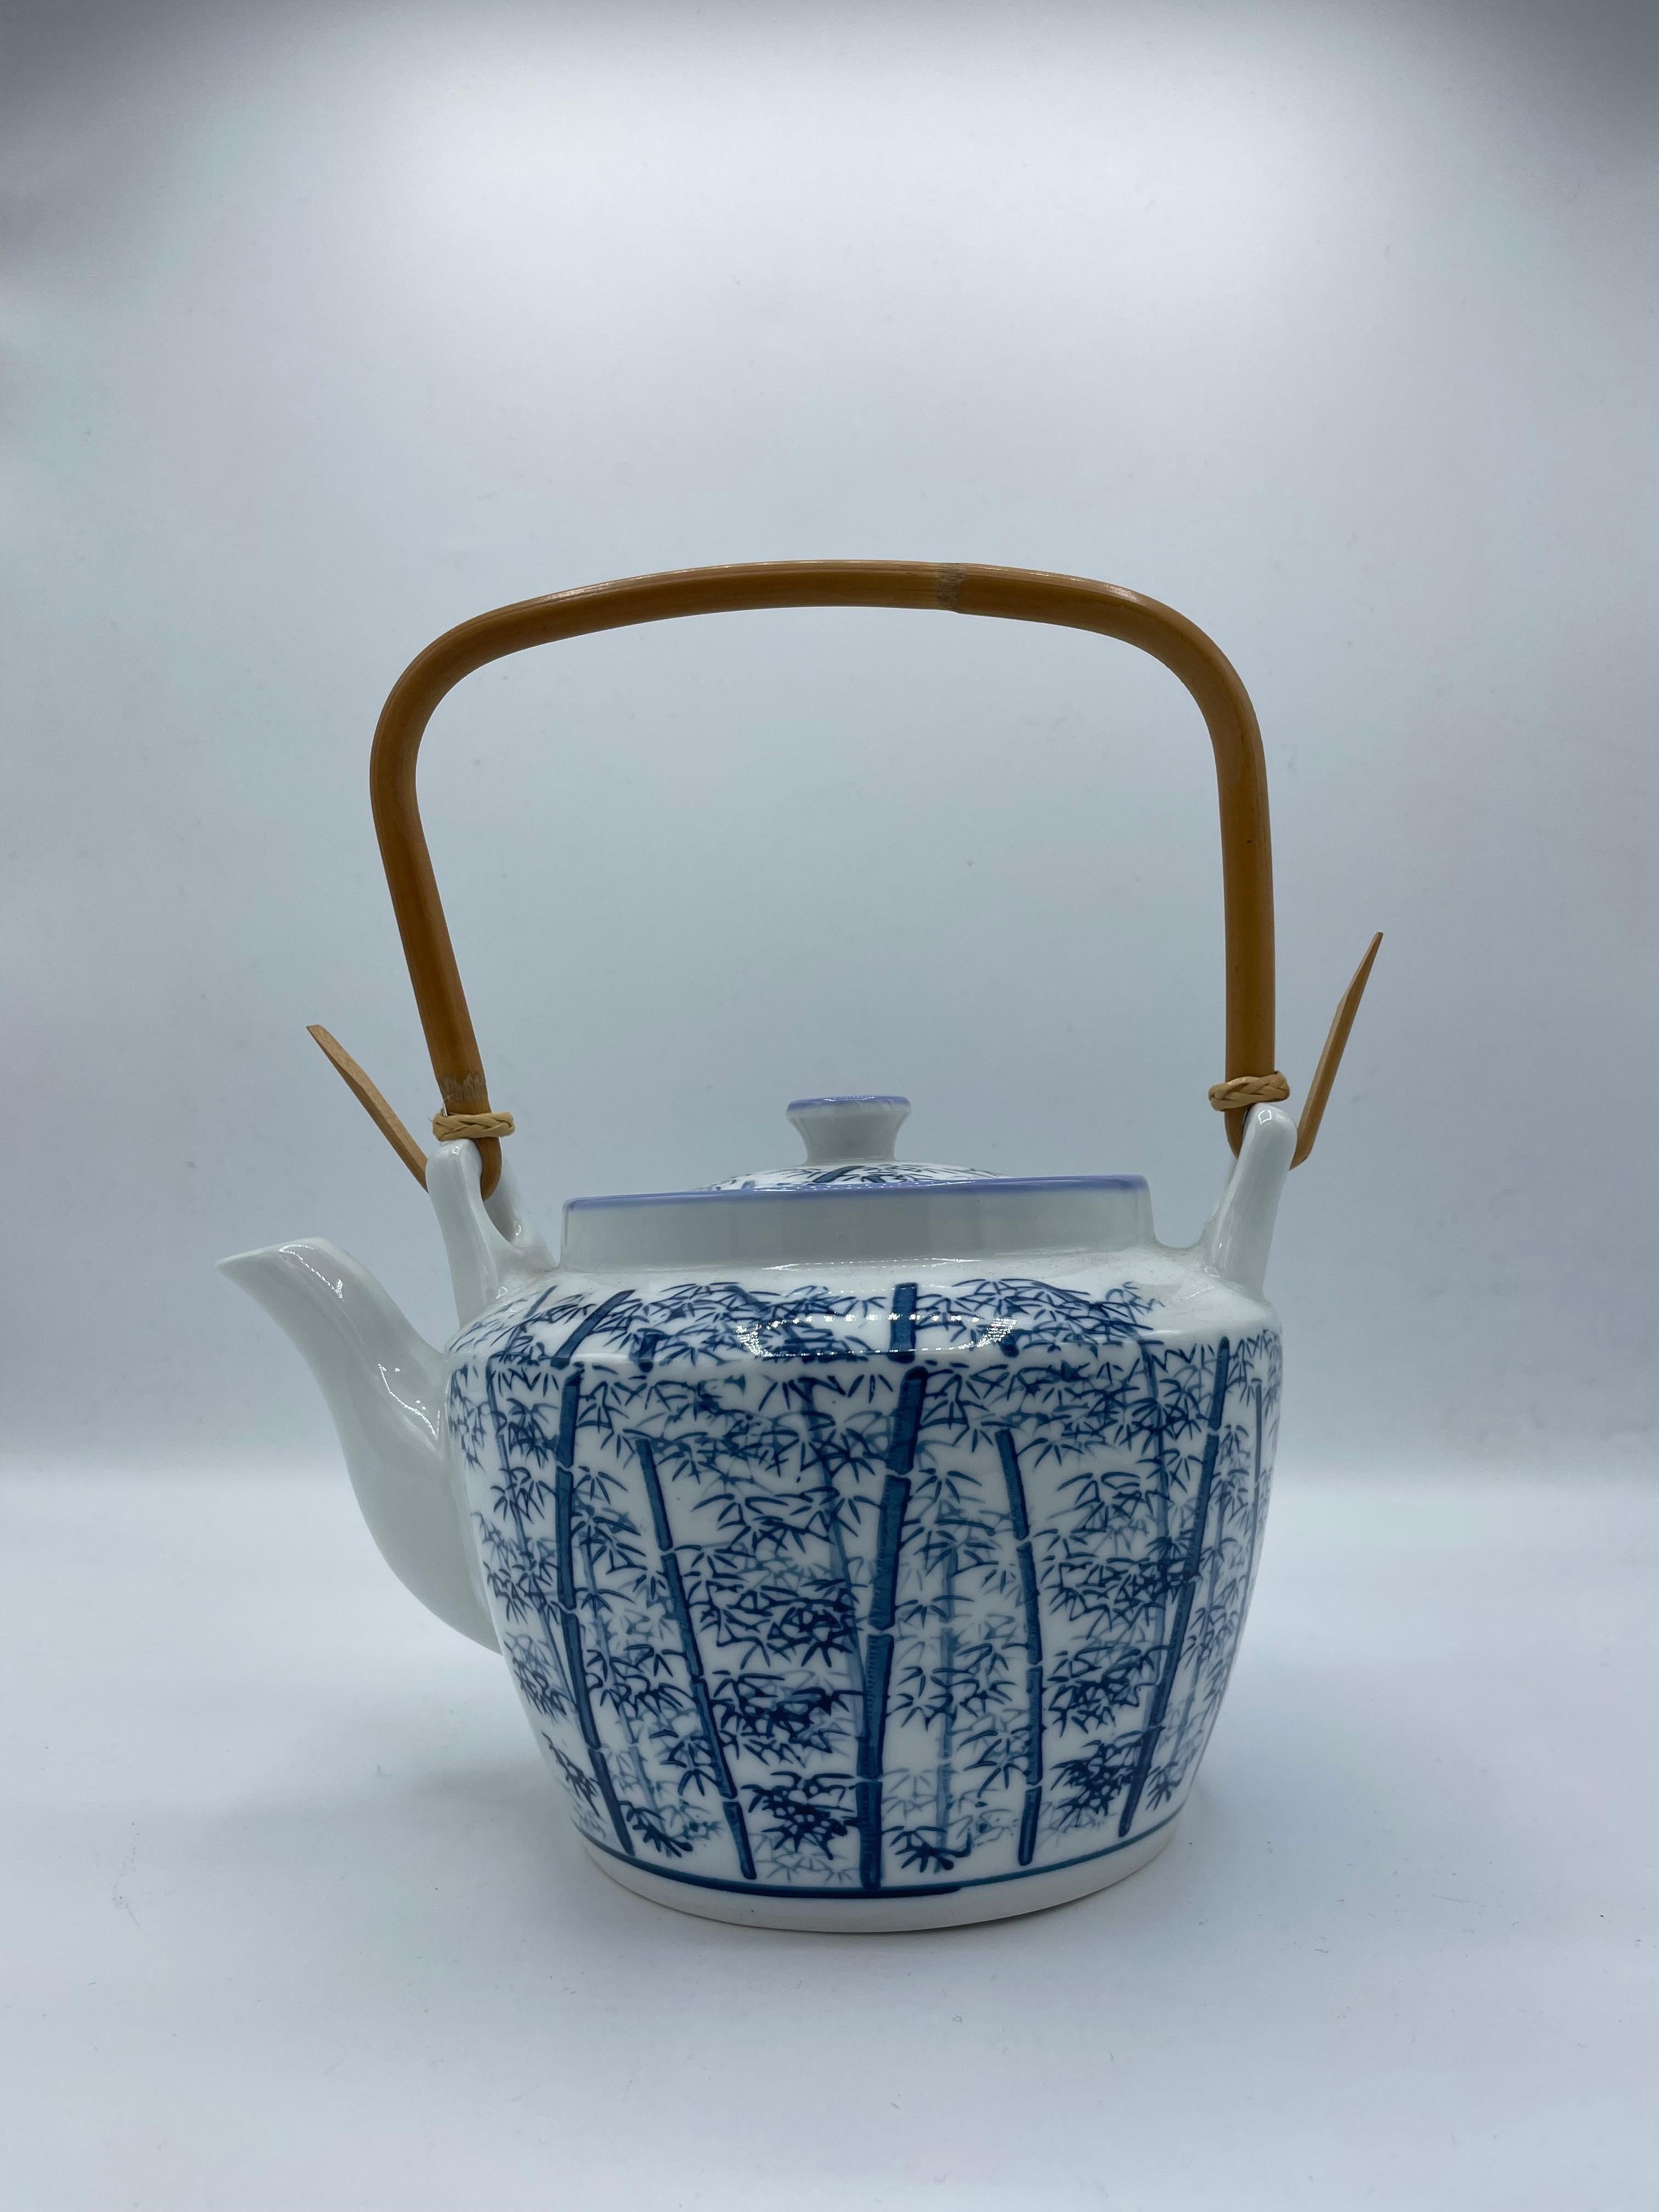 Dies ist eine japanische Teekanne, die in den 1960er Jahren in der Showa-Ära hergestellt wurde.
Sie ist aus Porzellan und das Handgelenk aus Holz und Bambus gefertigt.

Abmessungen:
20,5 x 16 x H 25
Länge des Handgelenks  11 cm